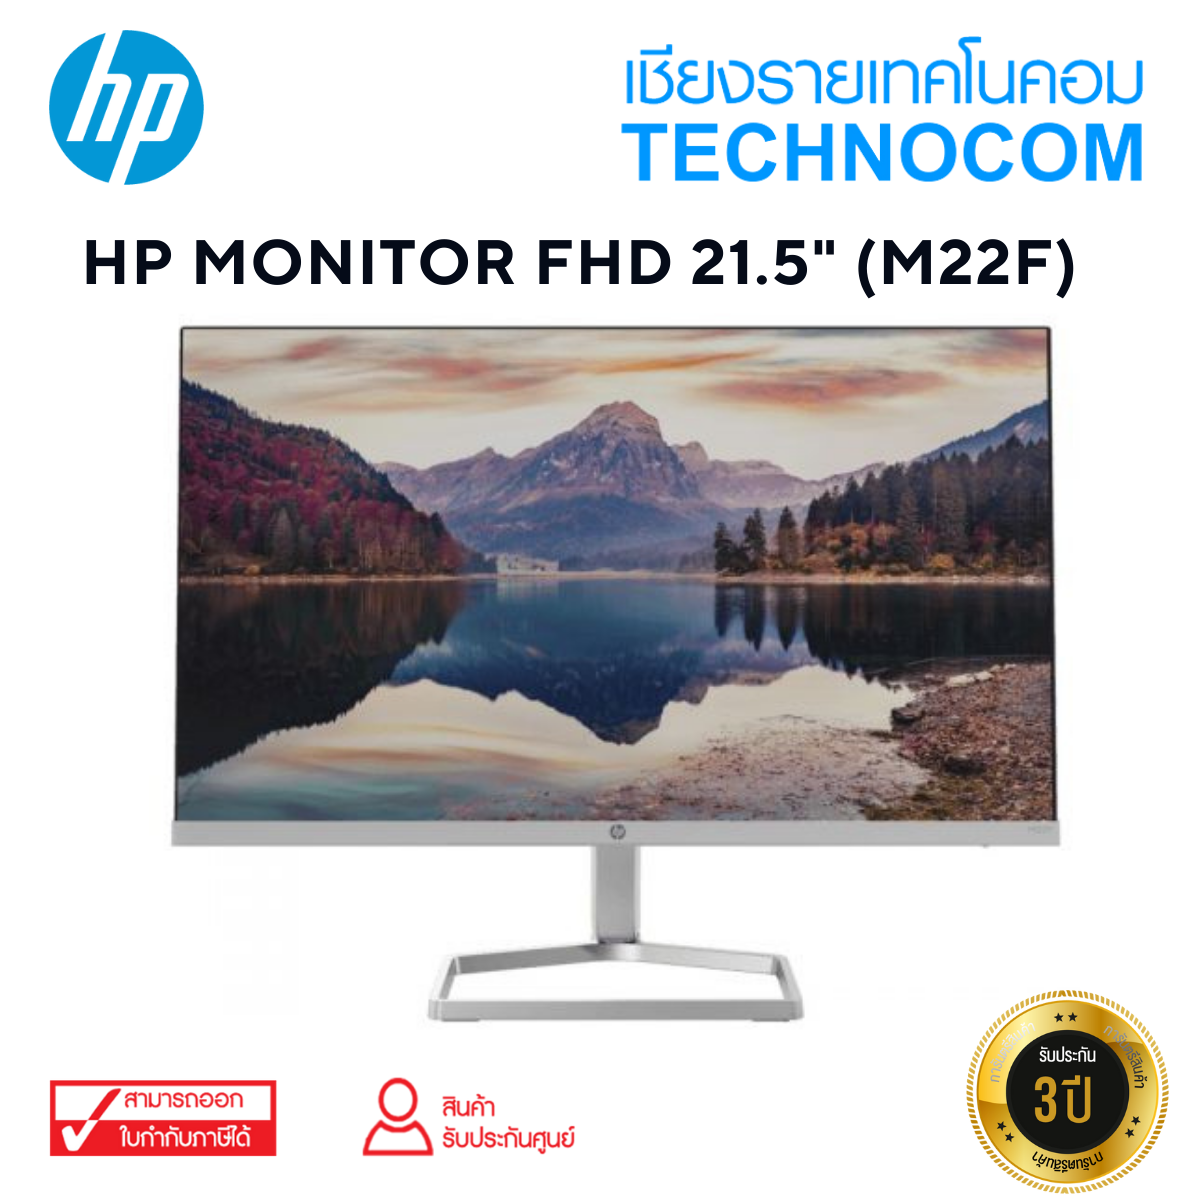 HP MONITOR FHD 21.5" (M22F)